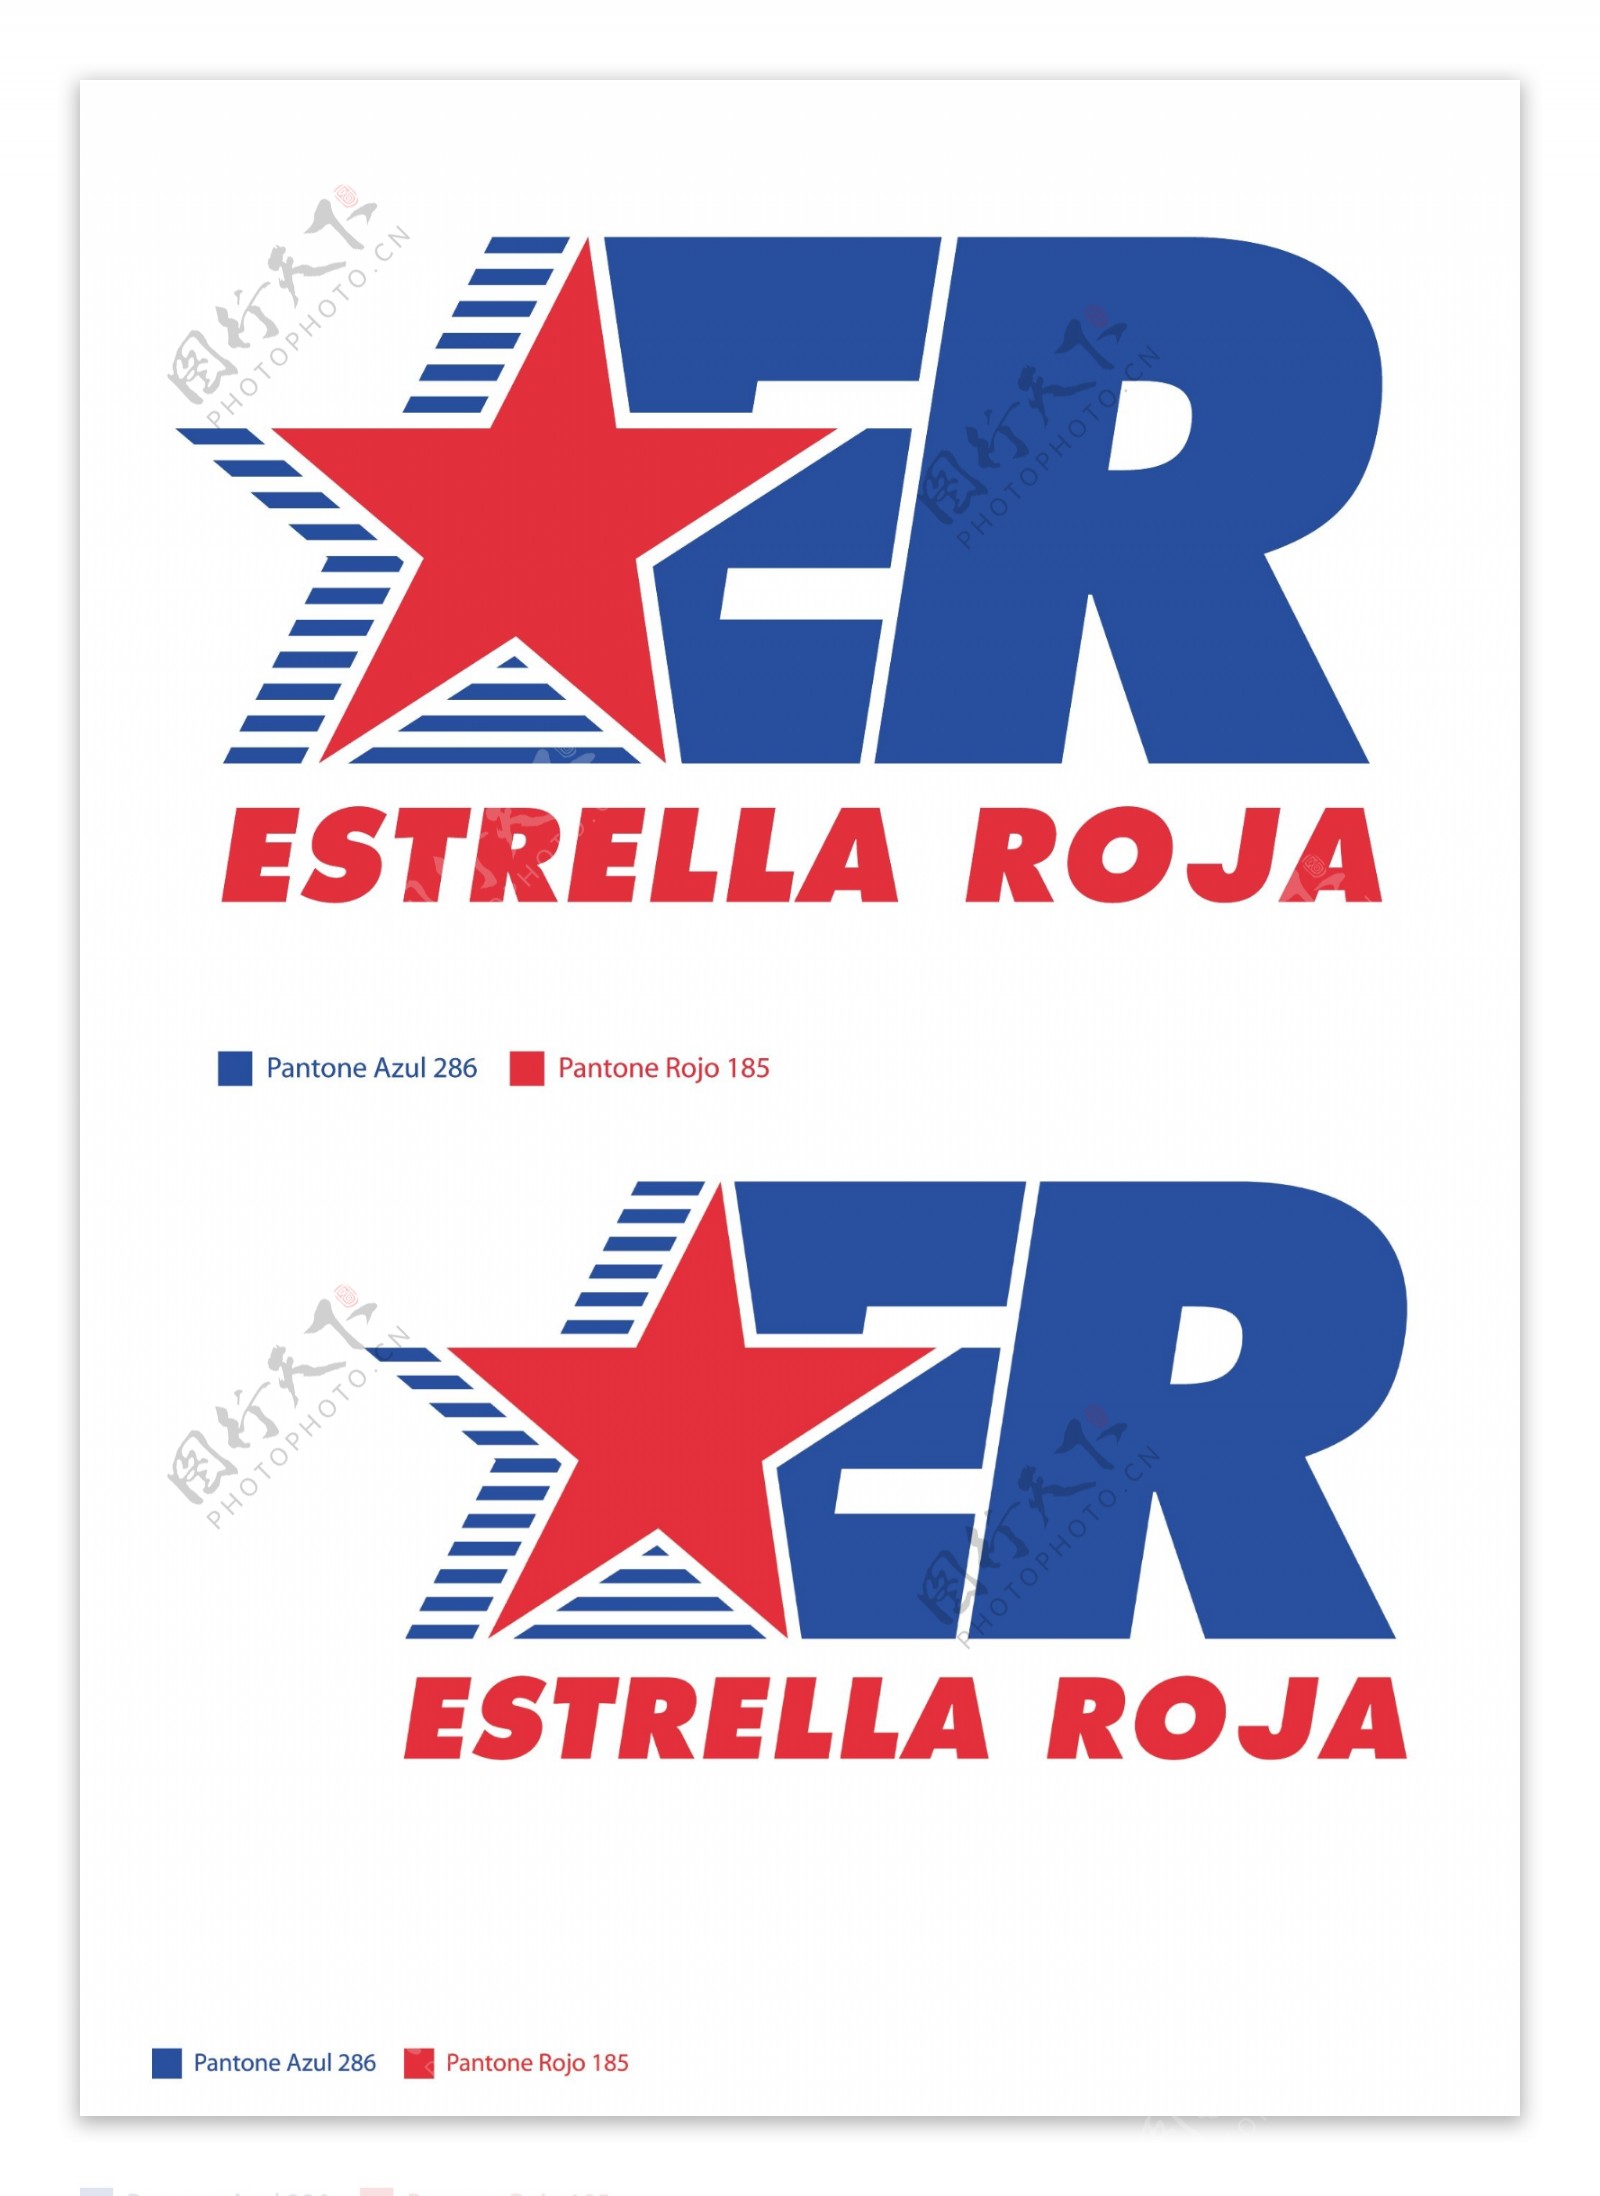 EstrellaRojalogo设计欣赏EstrellaRoja公路运输LOGO下载标志设计欣赏